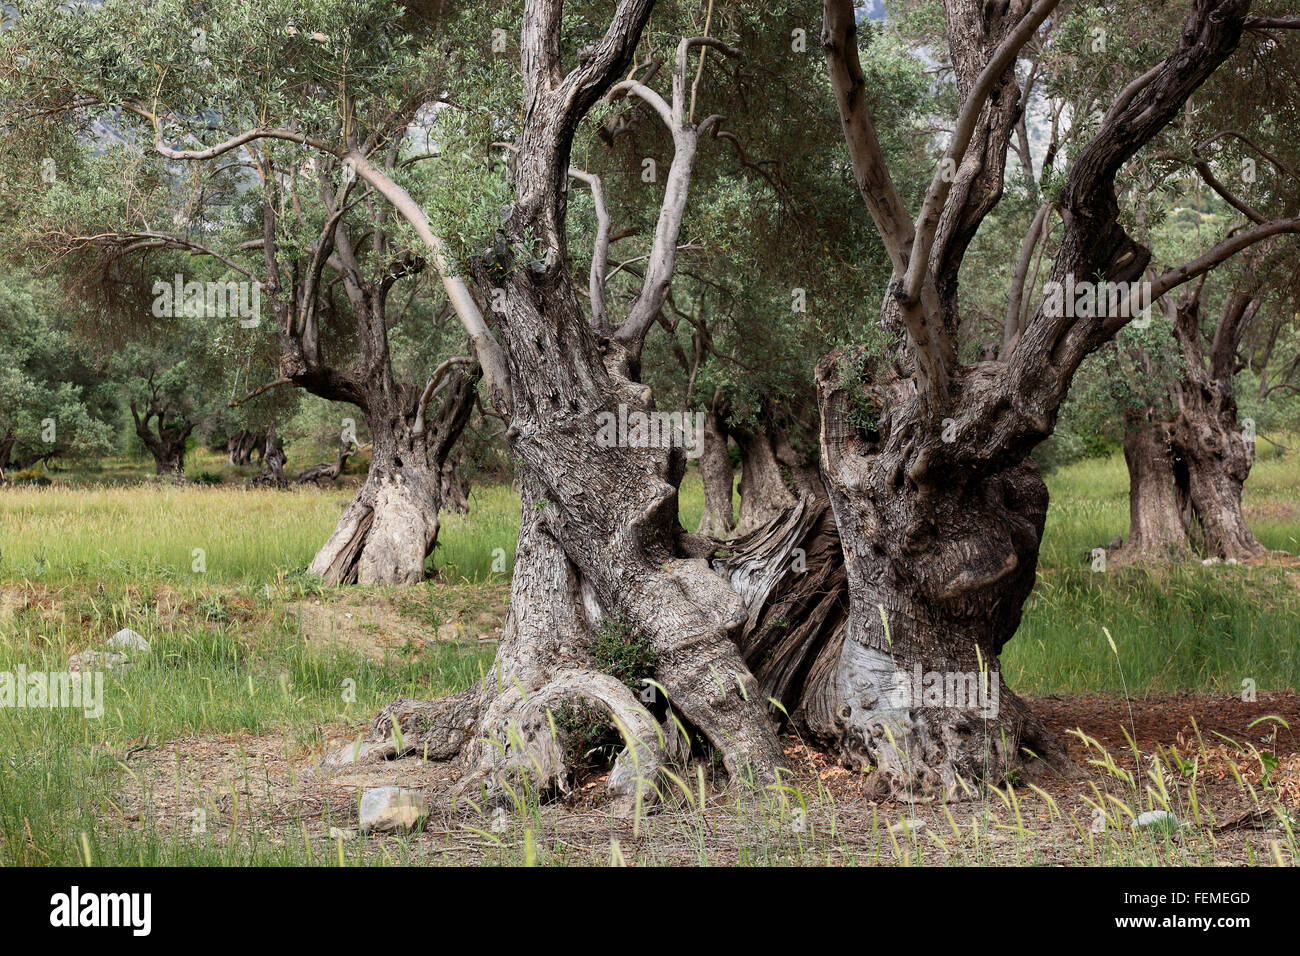 Creta, ulivi secolari, buffi più spessa tronco, in legno di olivo Foto Stock